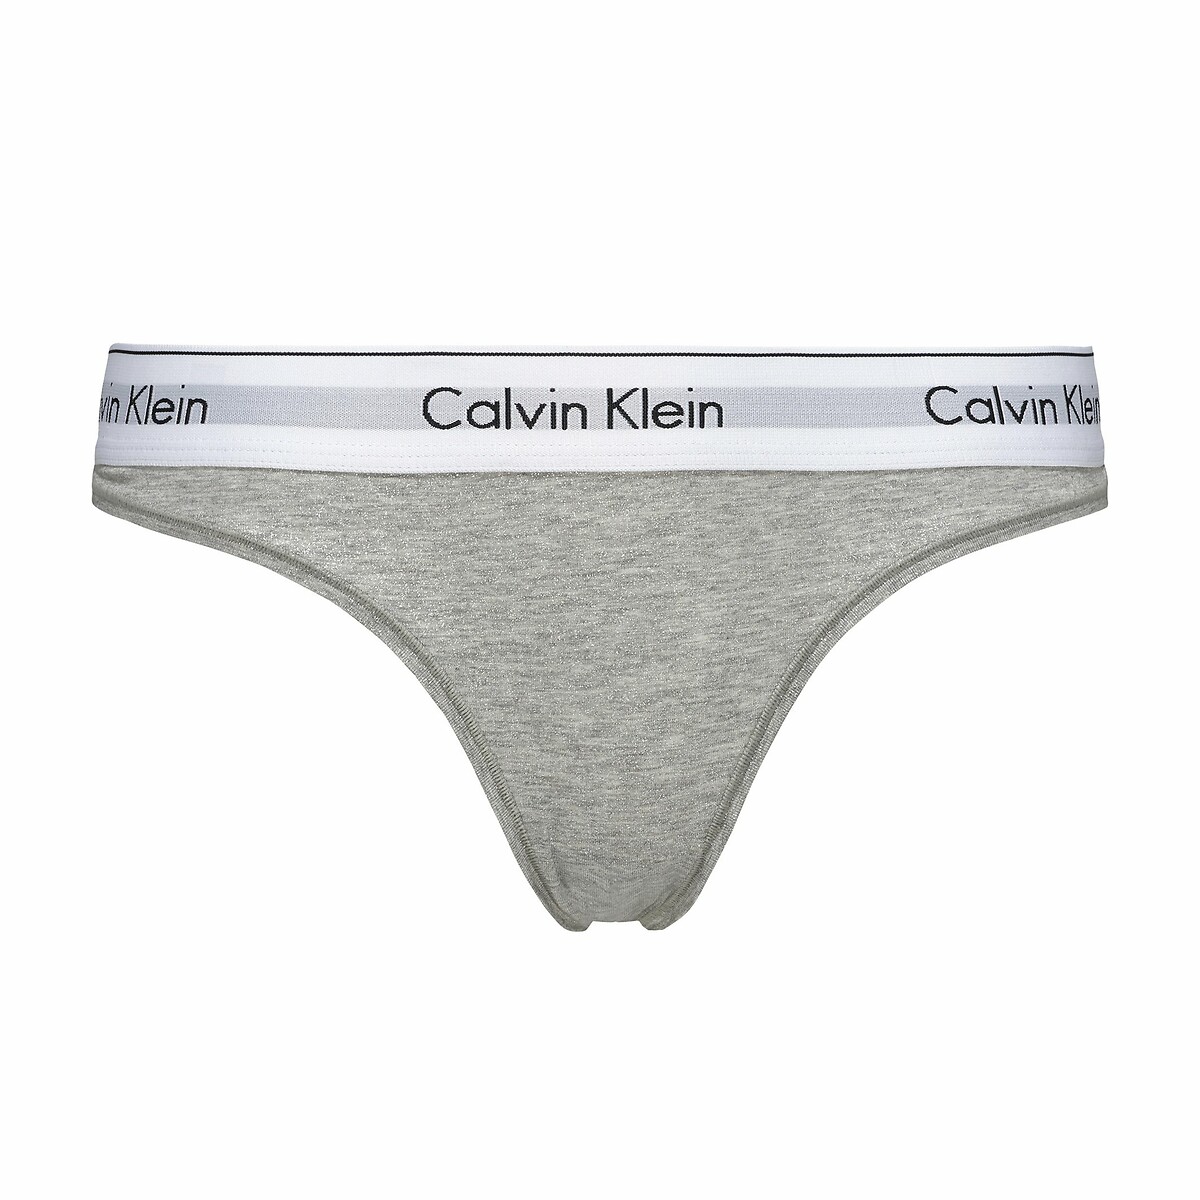 String modern Underwear Redoute cotton, | Klein markenschriftzug Calvin La